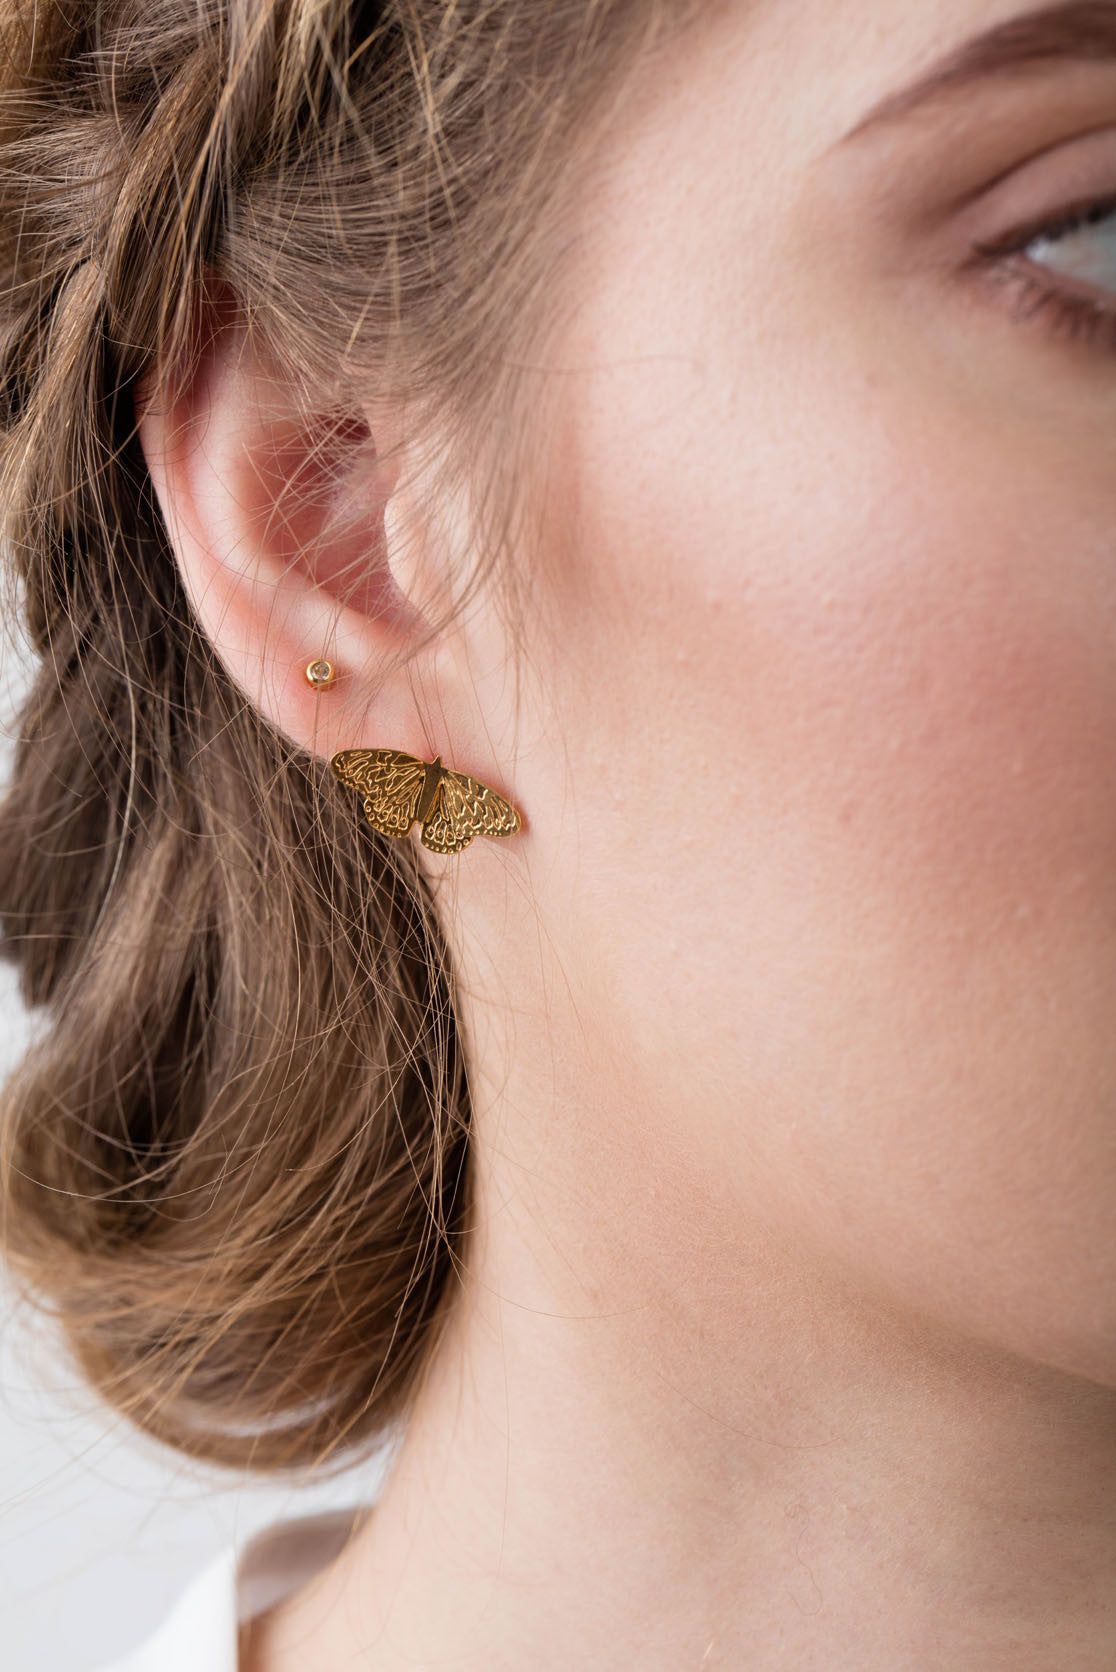 Butterfly Stud Earrings in Sterling Silver or Gold